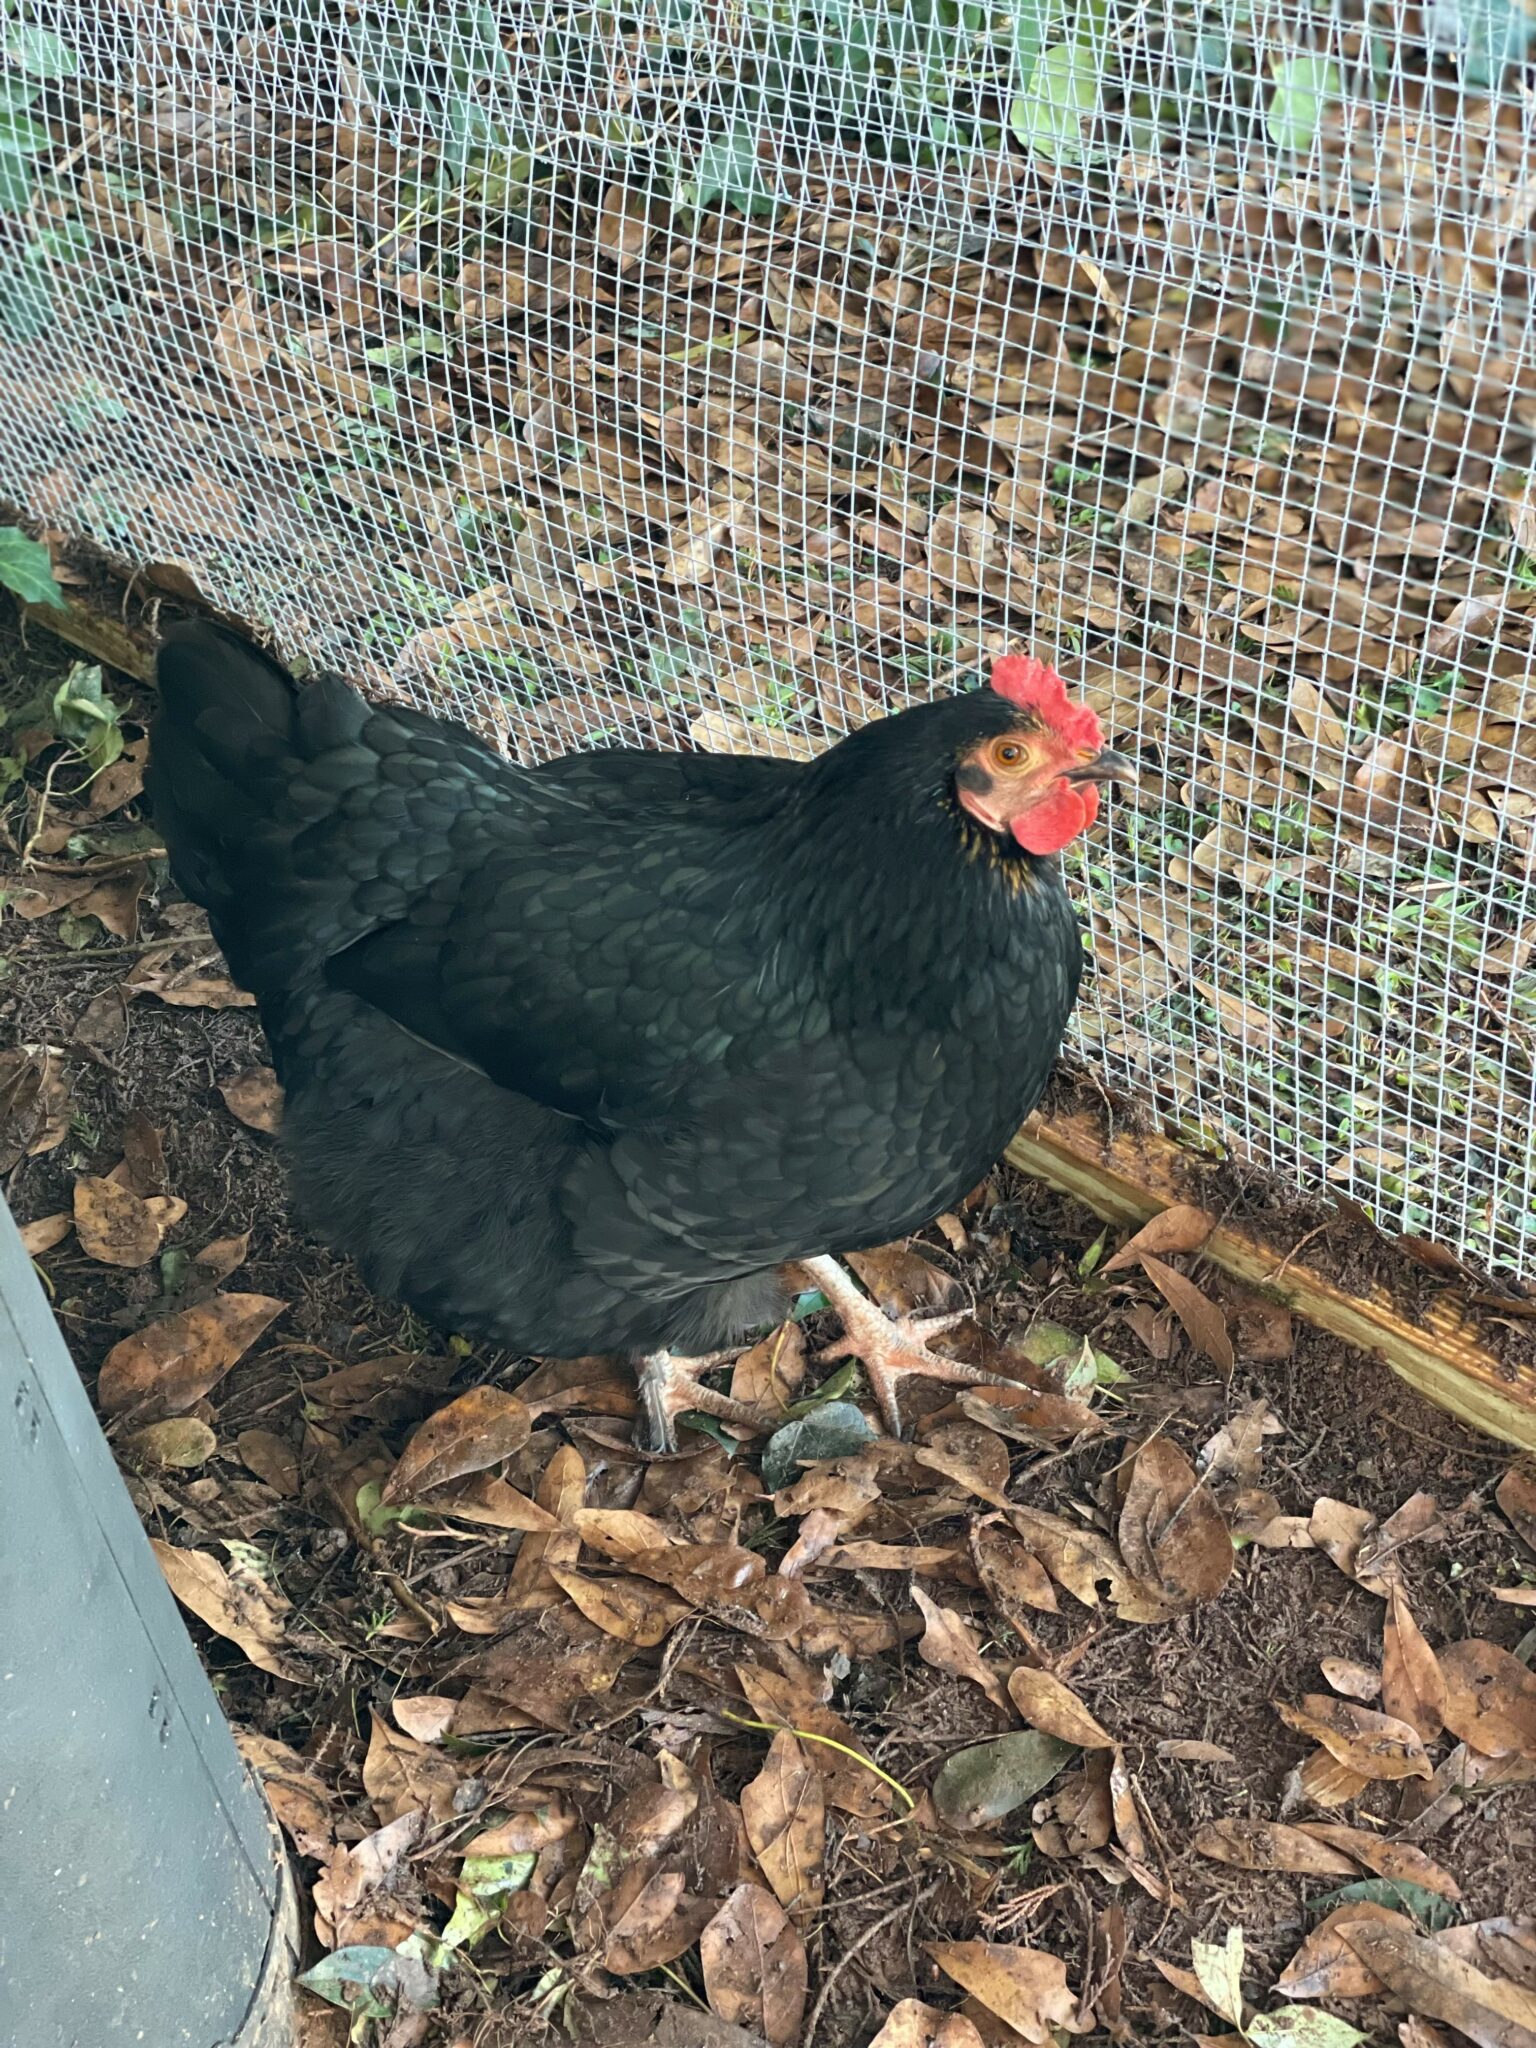 Black chicken in coop